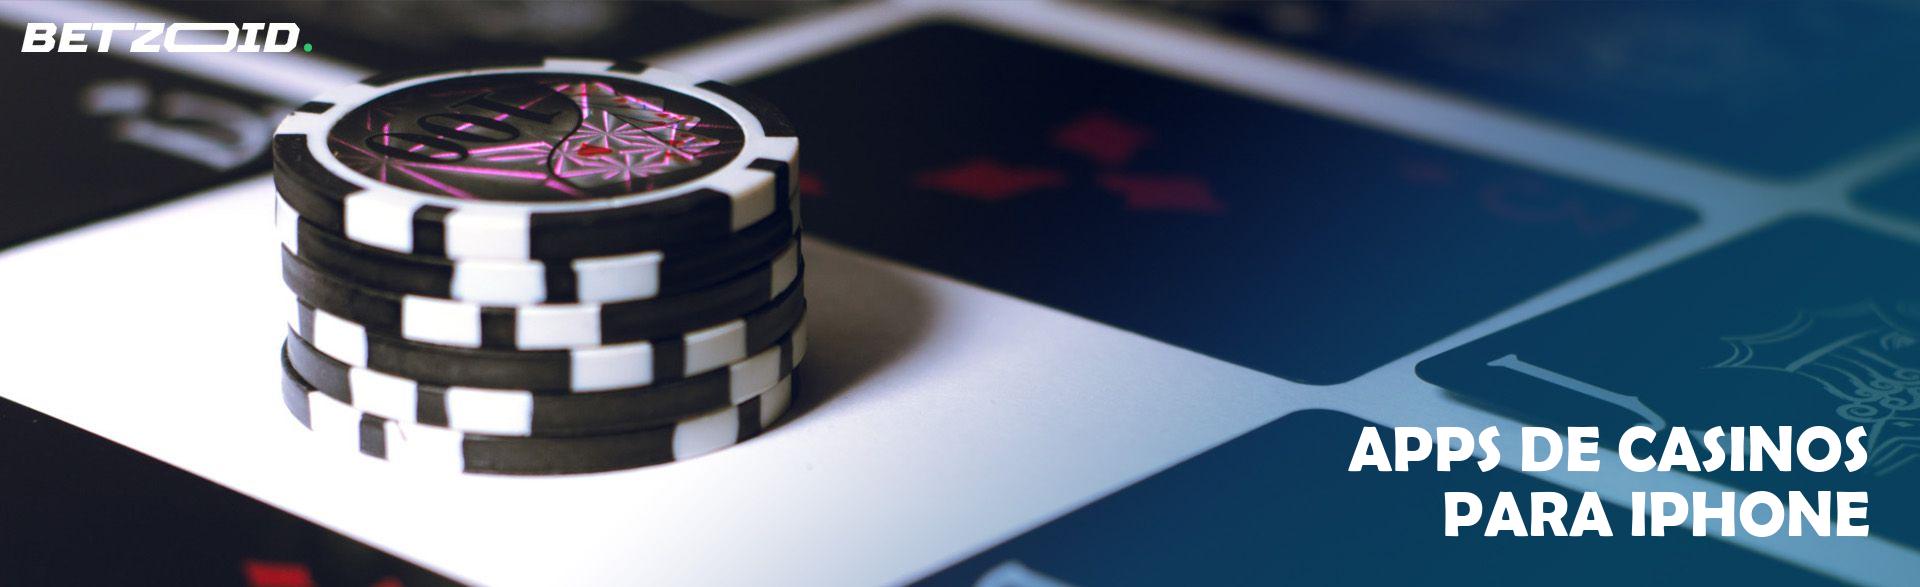 Apps de Casinos Para iPhone.